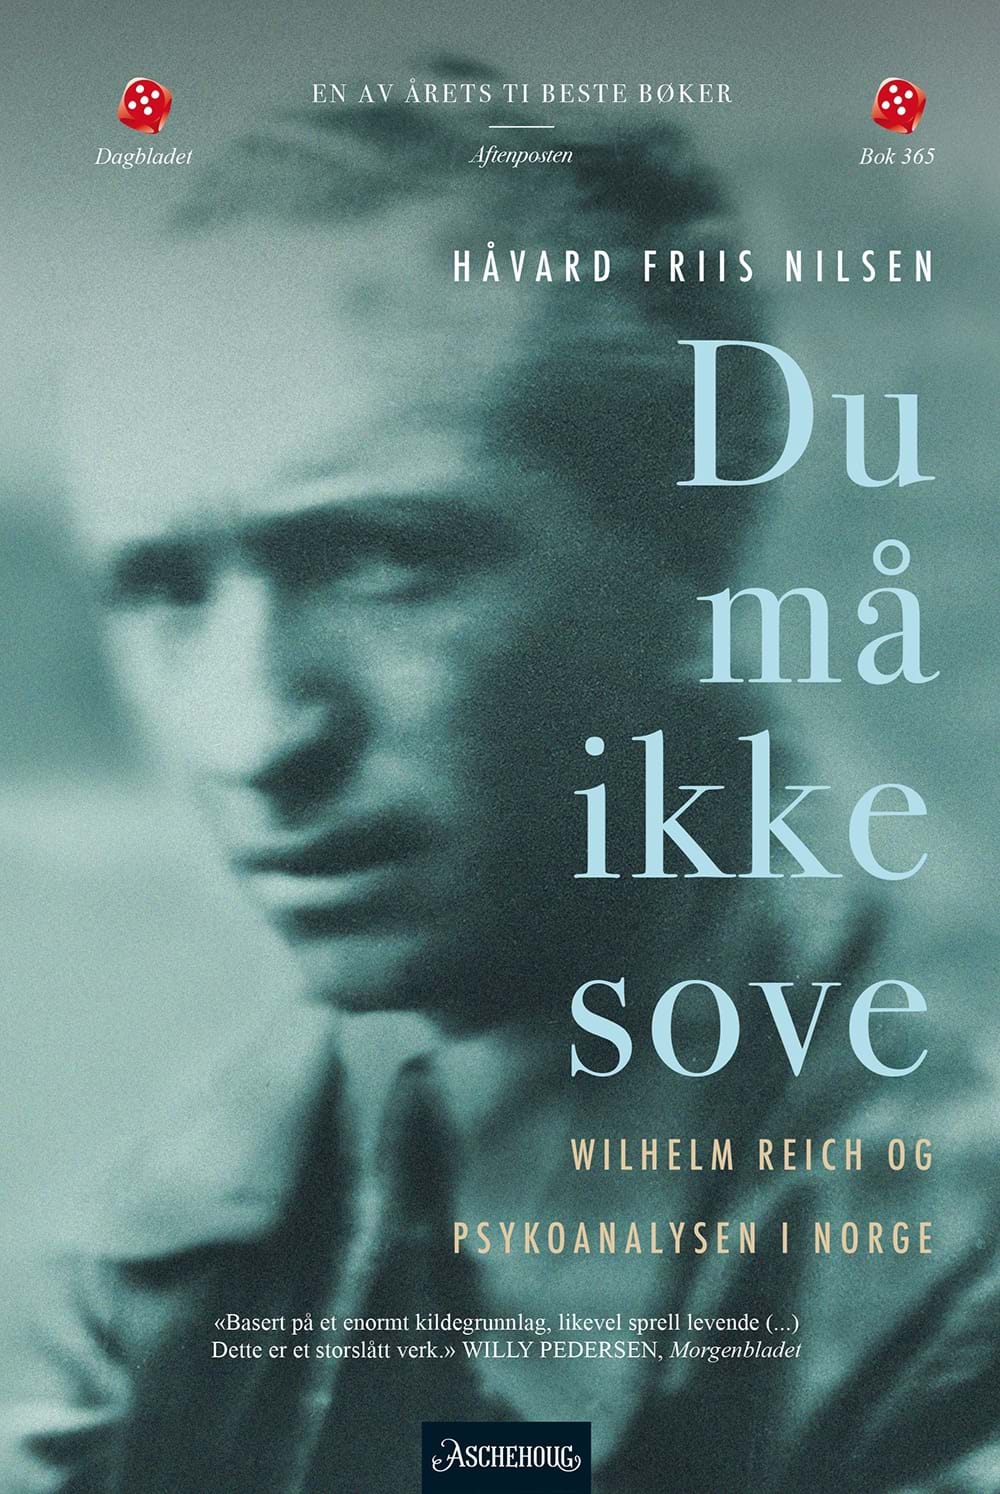 Bilde av omslaget til H&#229;vard Friis Nilsen sin bok om psykoanalysen i Norge.